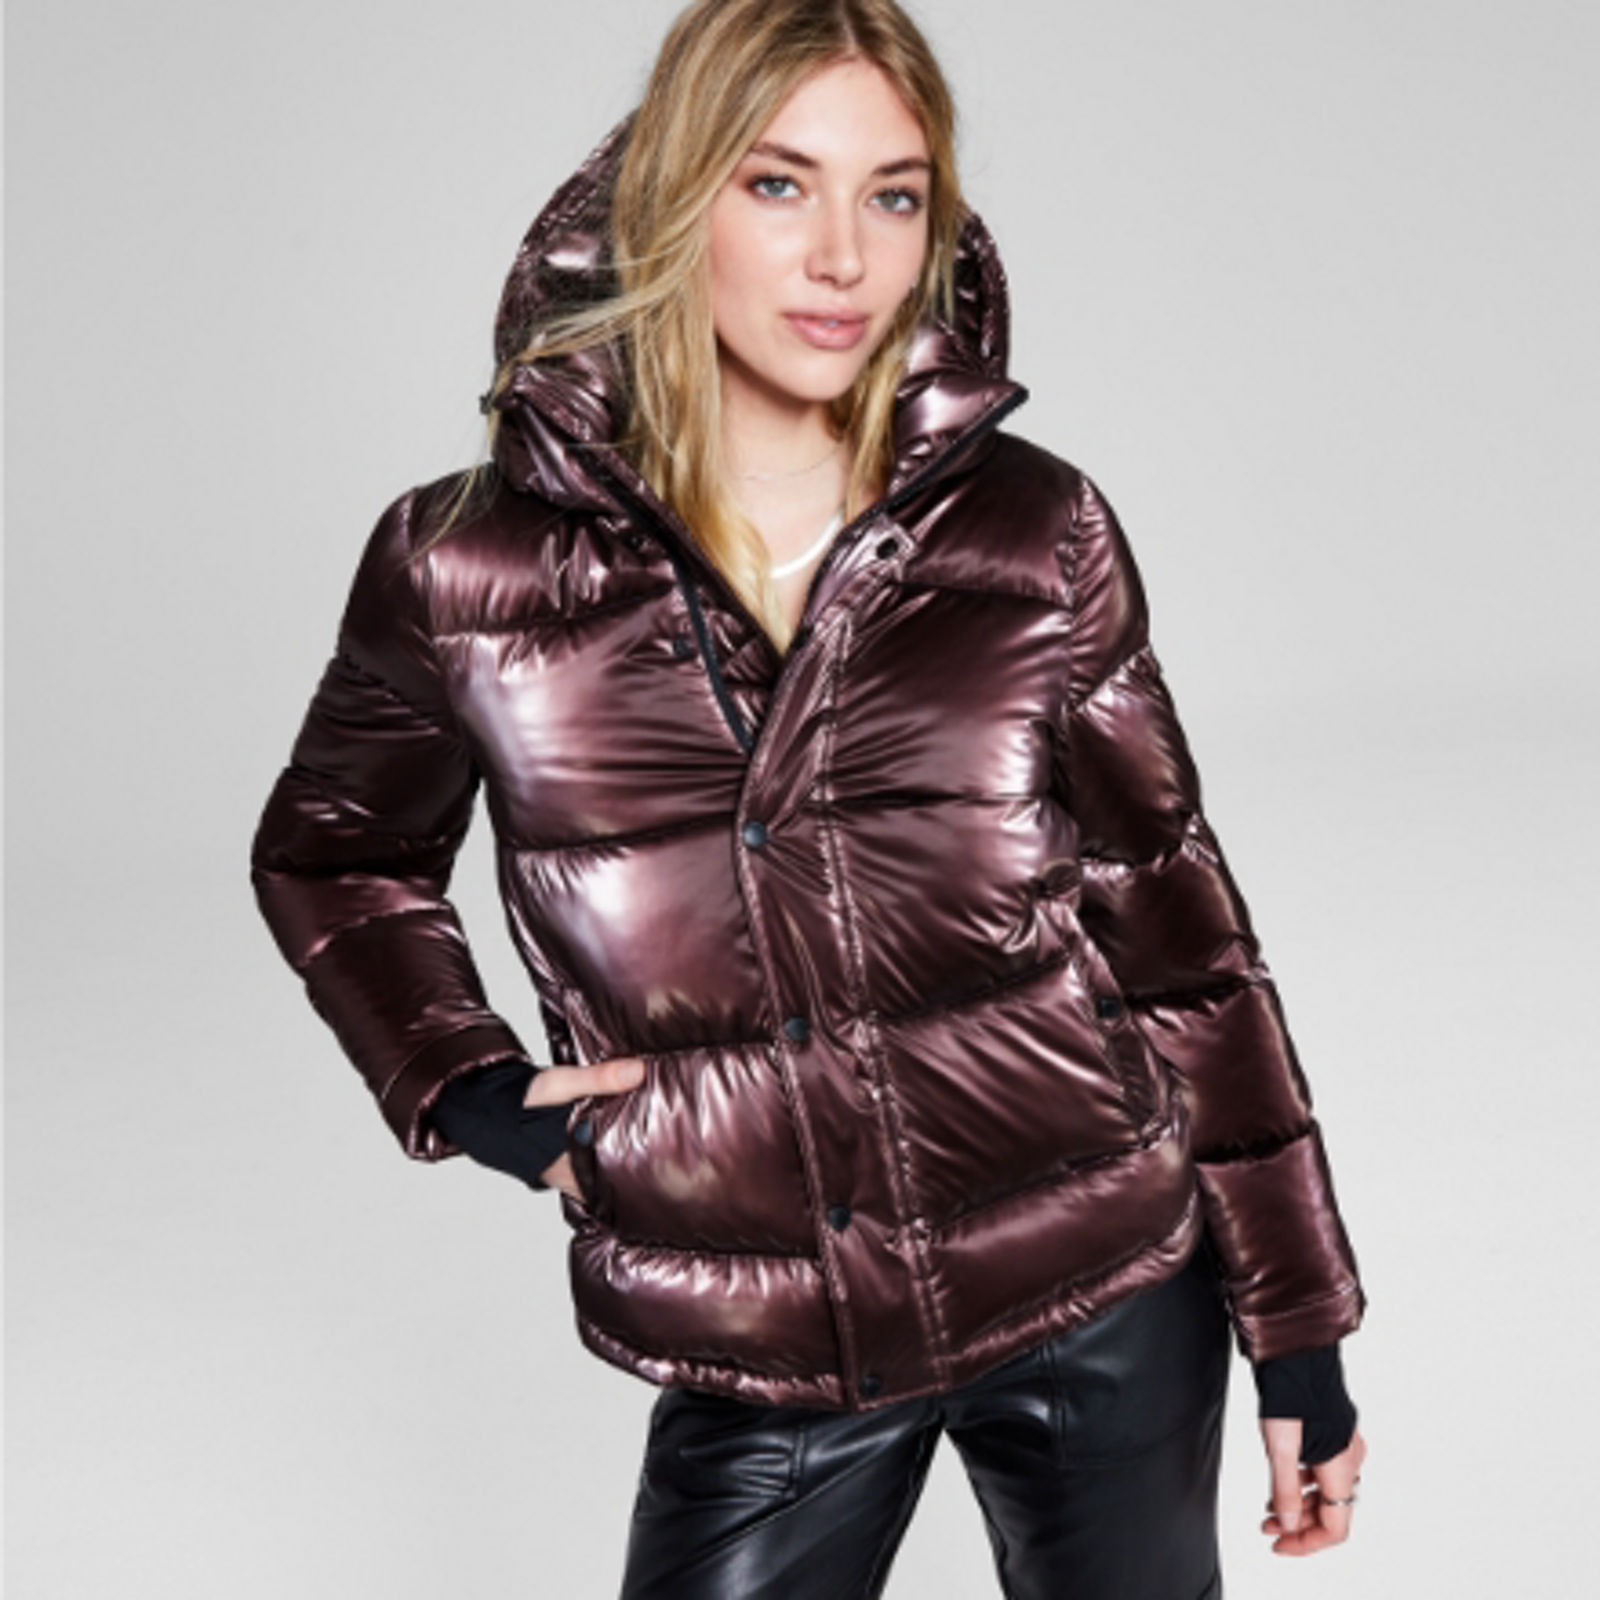 DKNY Women's Lightweight Outerwear Packable Full-Zip, Sage, X